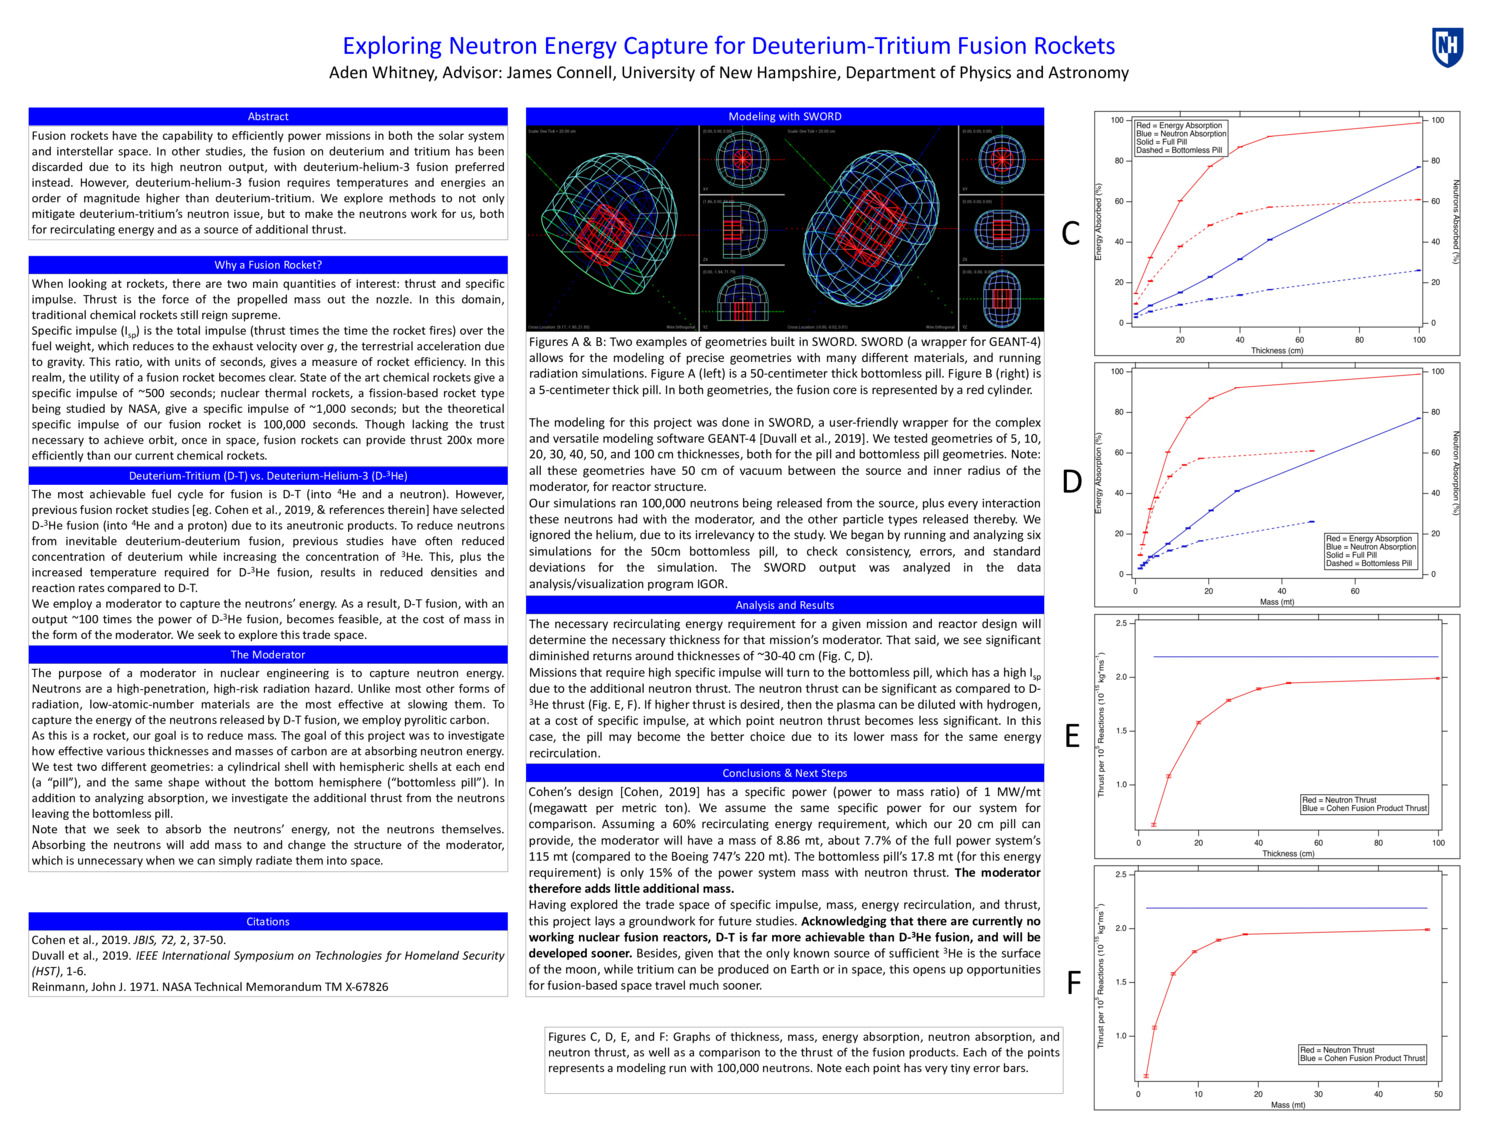 Exploring Neutron Energy Capture For Deuterium-Tritium Fusion Rockets by ahw1009